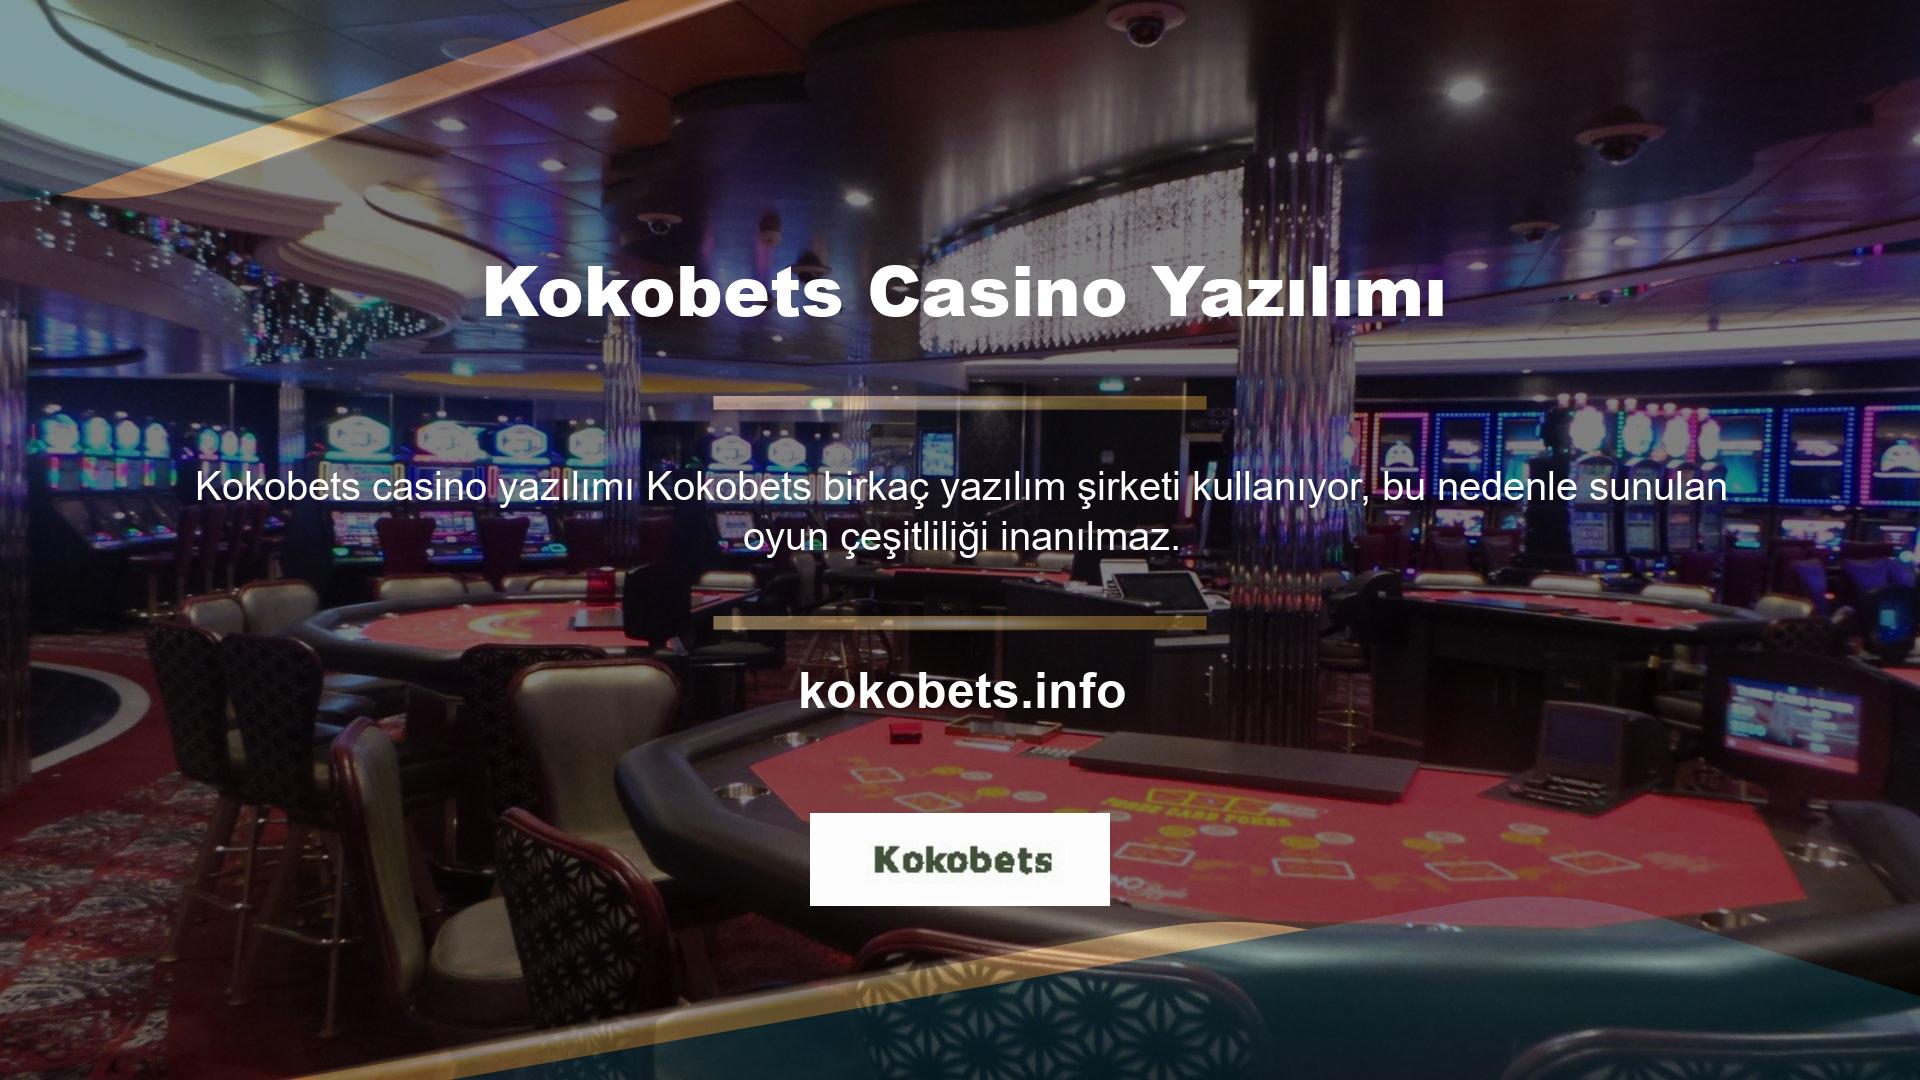 Casino yazılımı Amatic, NetEnt, Microgaming, Endorphina, Yggdrasil ve çok daha fazlası tarafından sağlanmaktadır